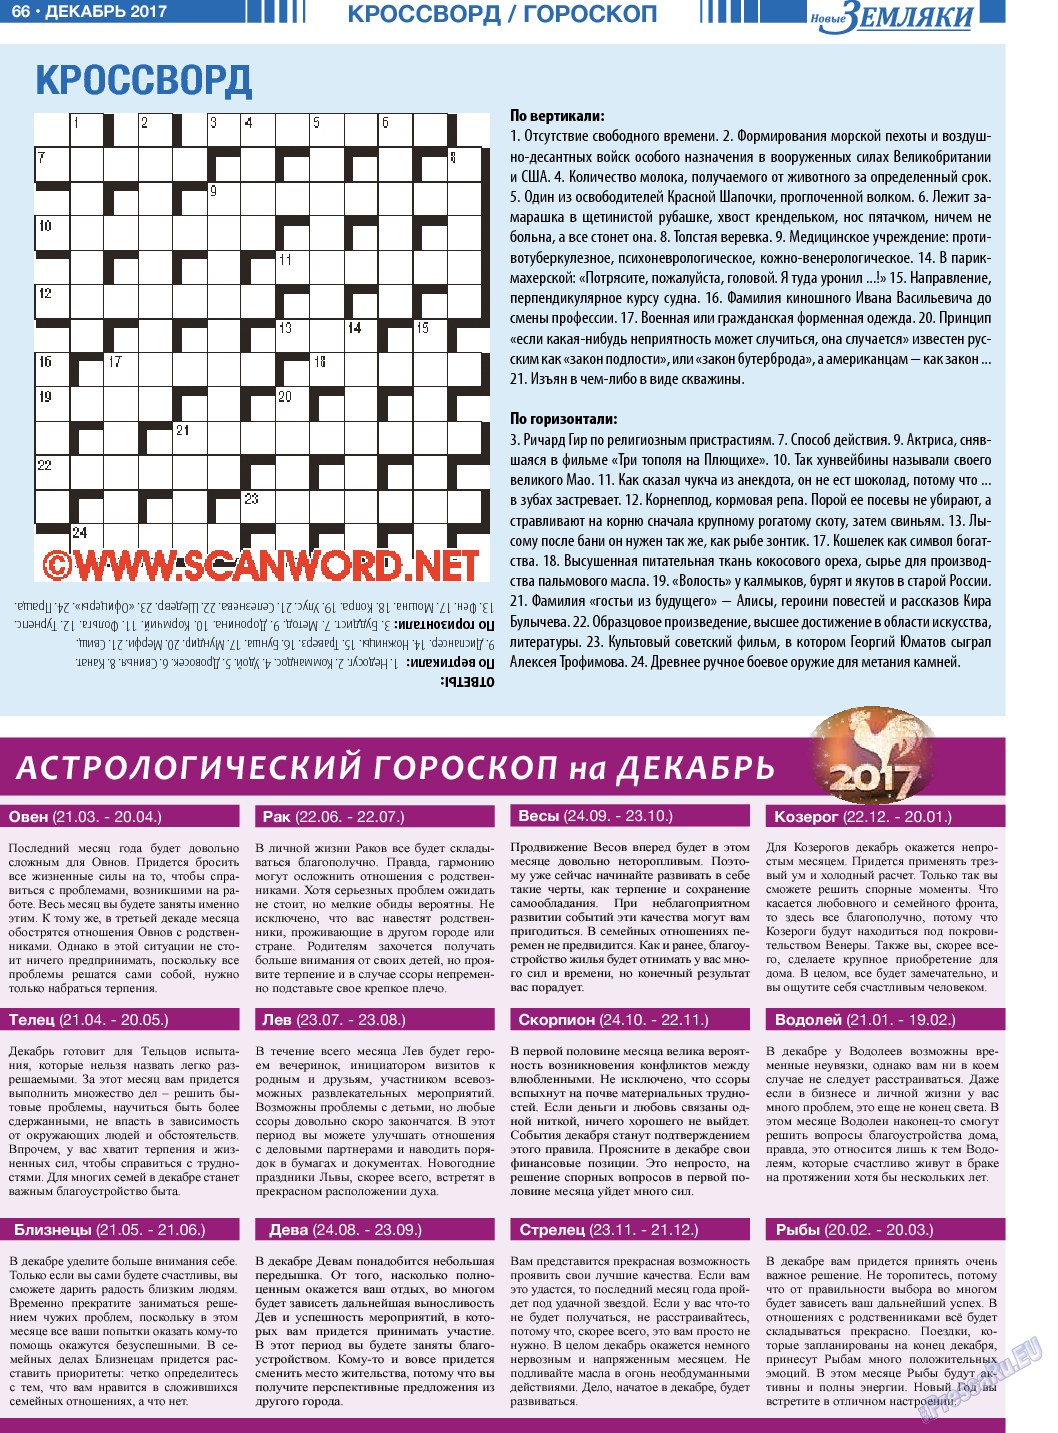 Новые Земляки, газета. 2017 №12 стр.66